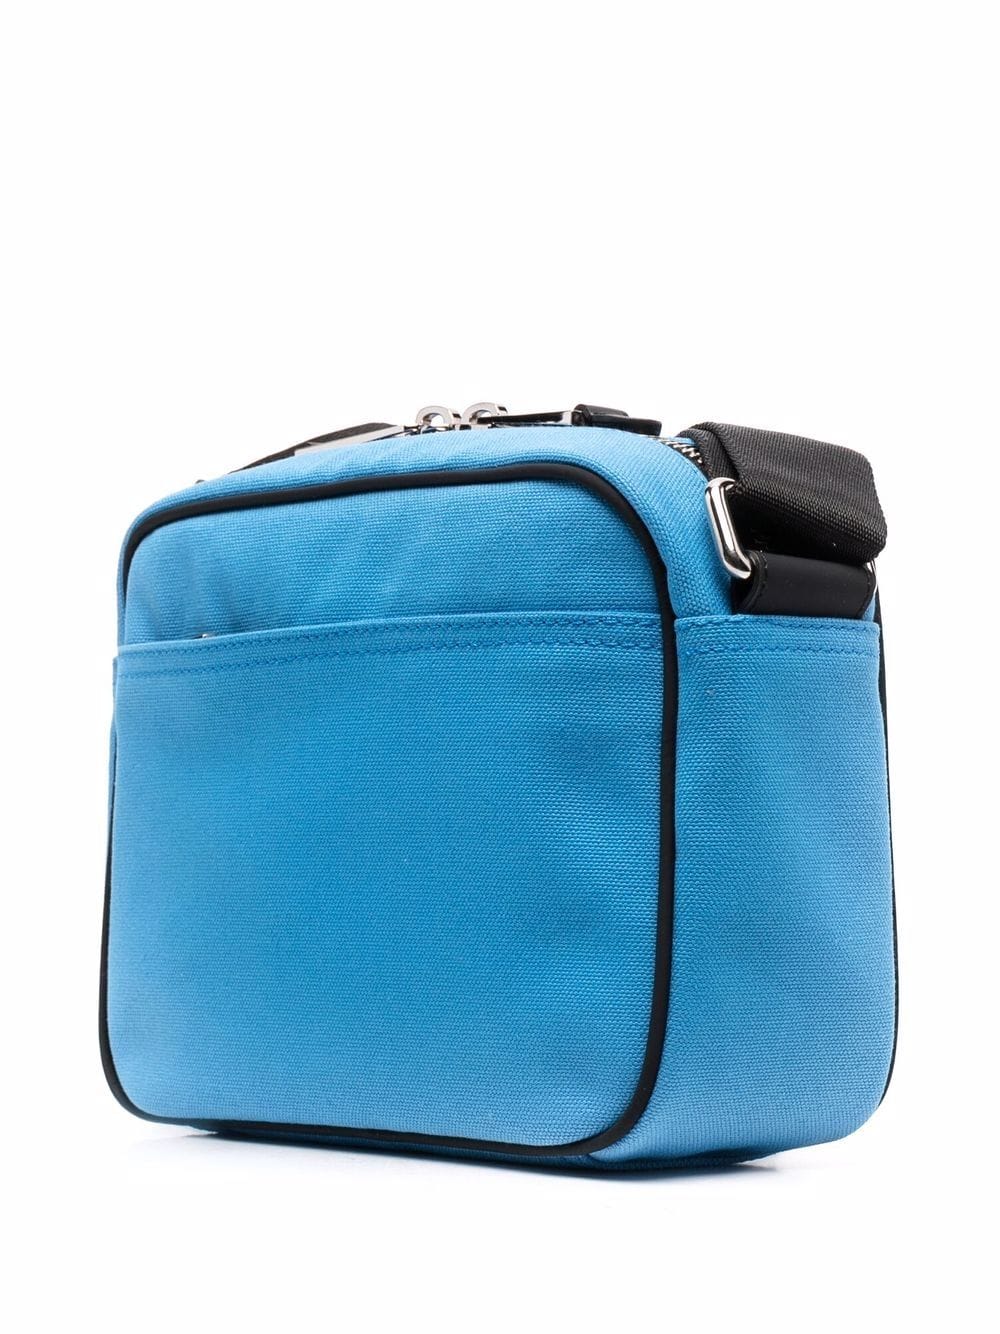 Moschino Blue Applique Shoulder Bag